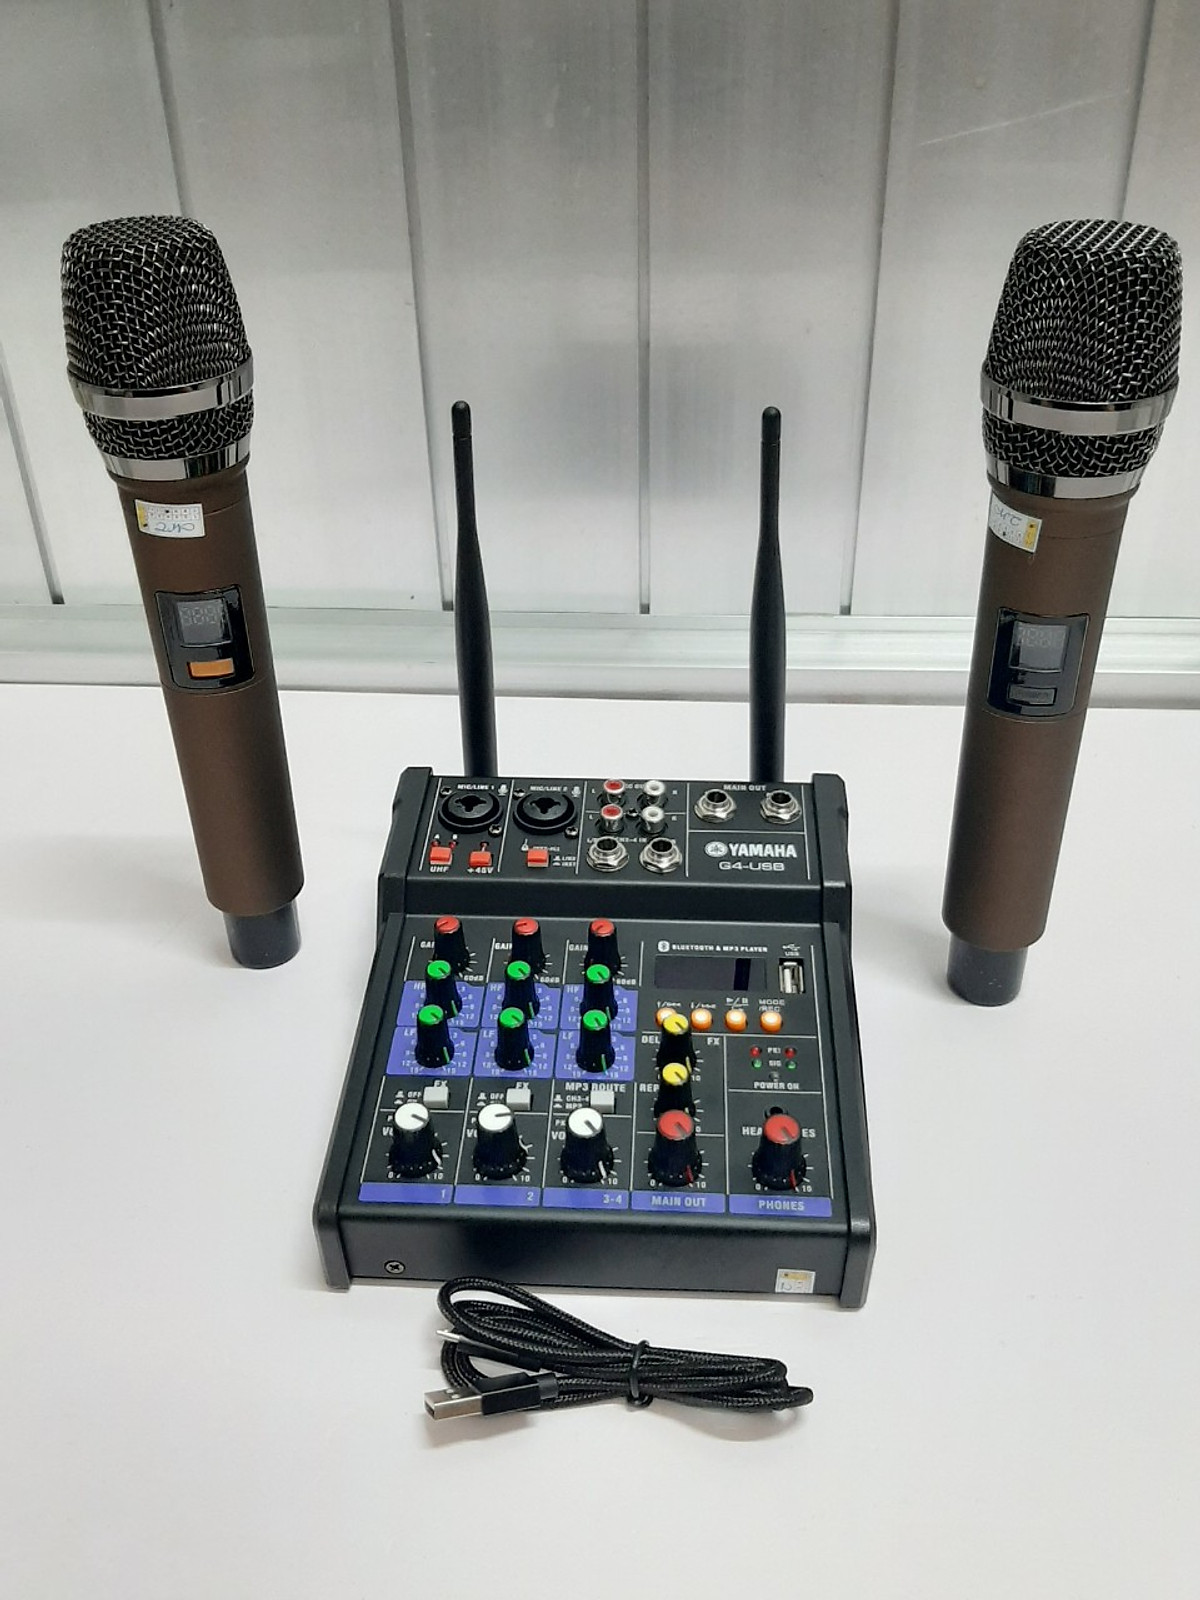 [Hàng chuẩn] Bàn trộn Mixer Yamaha G4 USB – Có bluetooth 5.0 - Chuyên dùng livestream, karaoke gia đình – Có màn hình led – Kèm 2 micro không dây – Dùng được cho loa kéo, loa ô tô, dàn karaoke gia đình, livestream, thu âm - Bảo hành 12 tháng